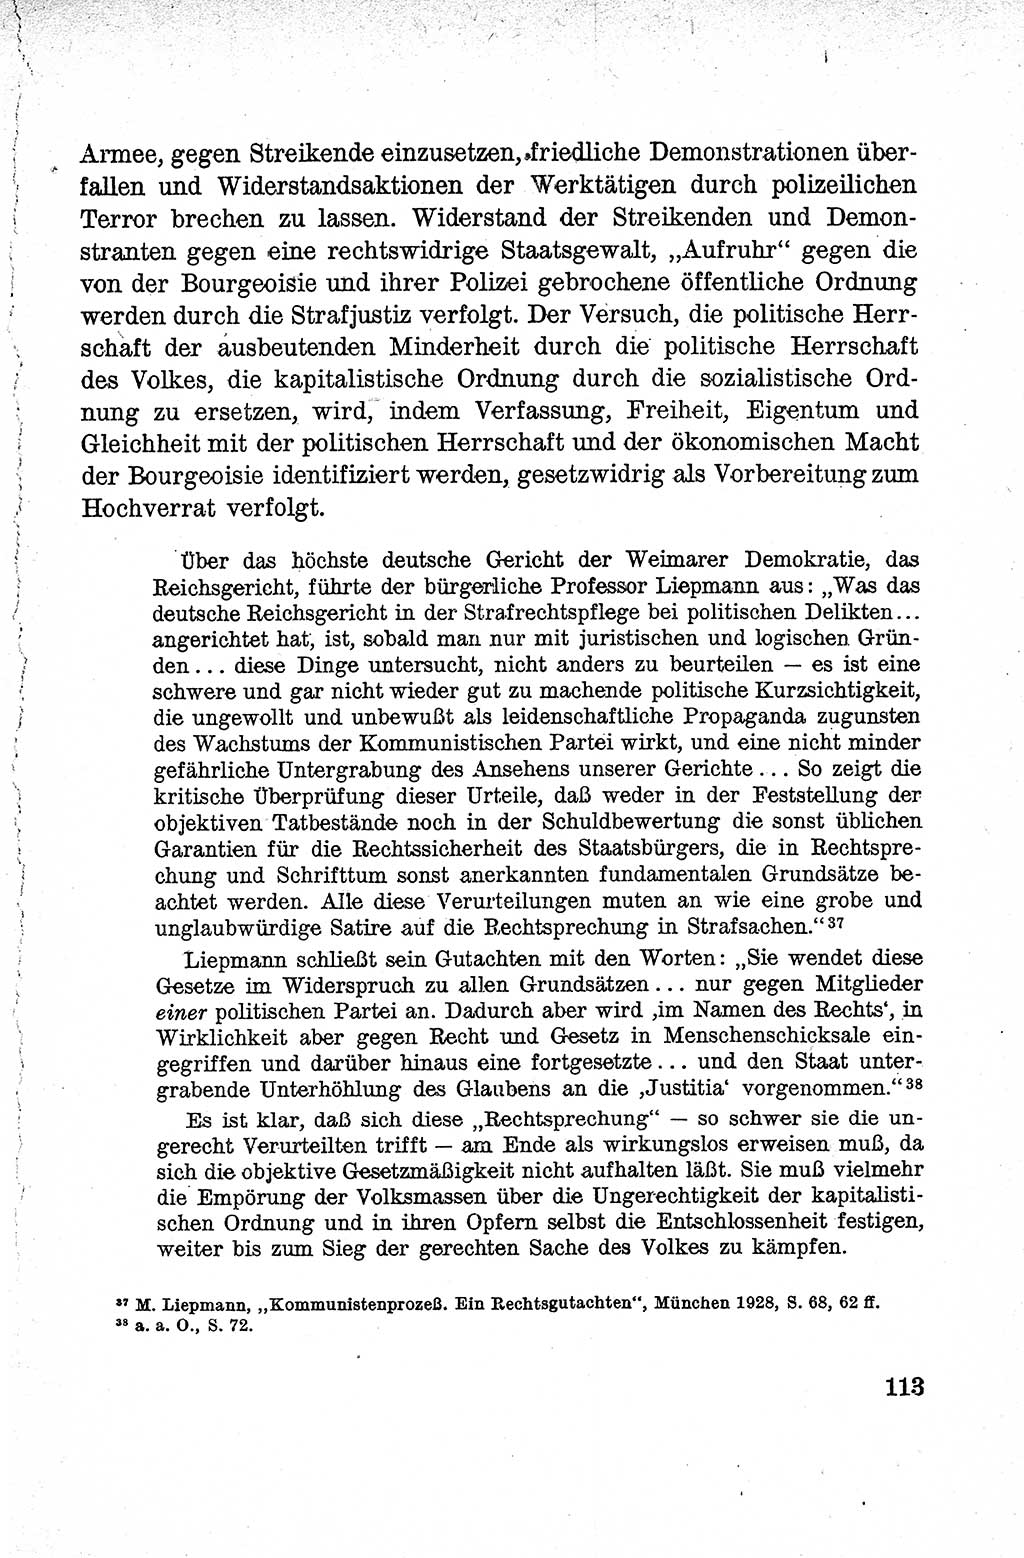 Lehrbuch des Strafrechts der Deutschen Demokratischen Republik (DDR), Allgemeiner Teil 1959, Seite 113 (Lb. Strafr. DDR AT 1959, S. 113)